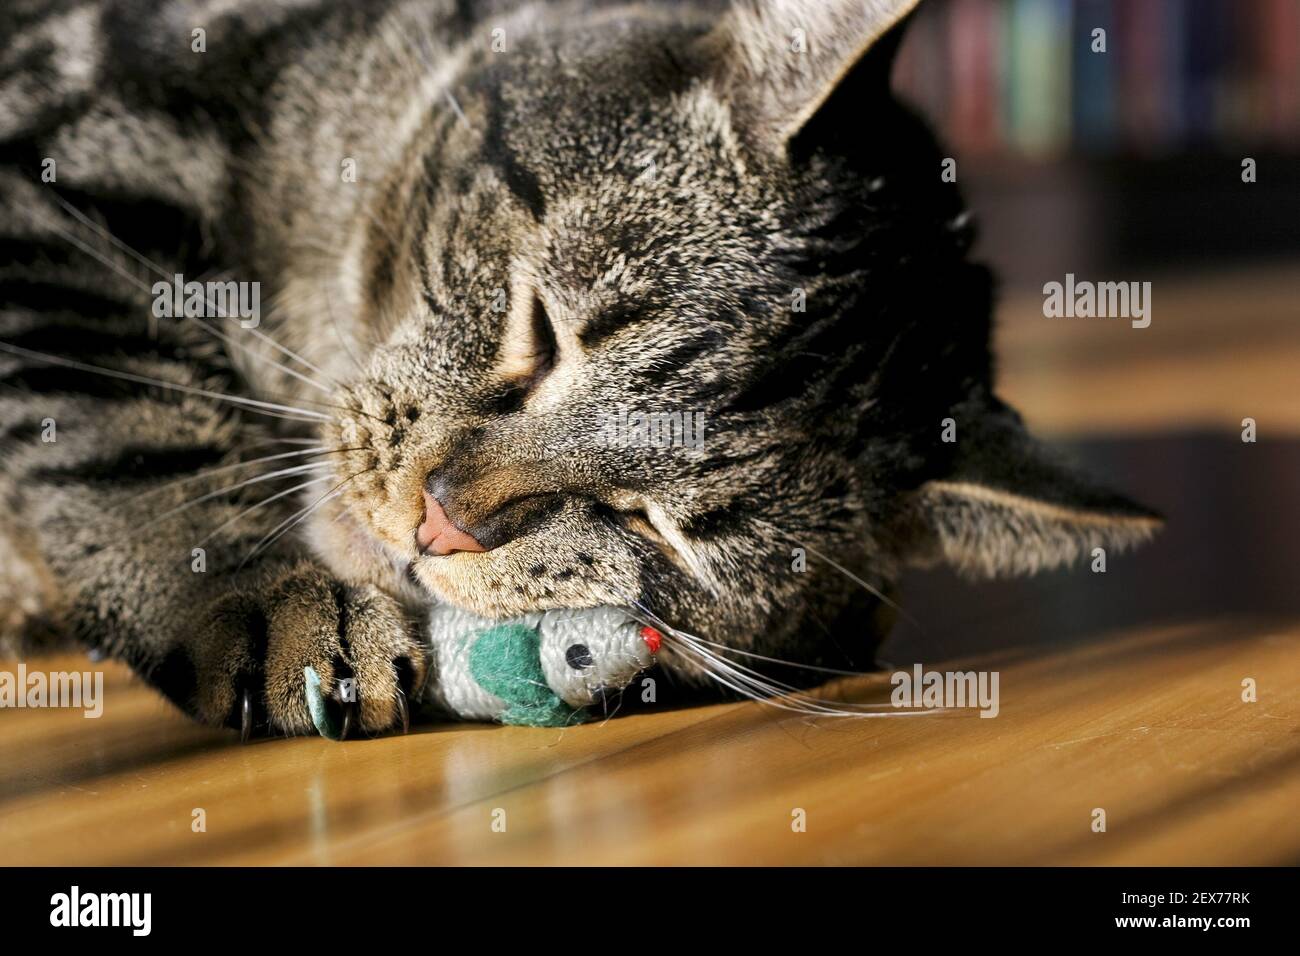 Europaeisch Kurzhaar Hauskatze, European Shorthair house cat Stock Photo